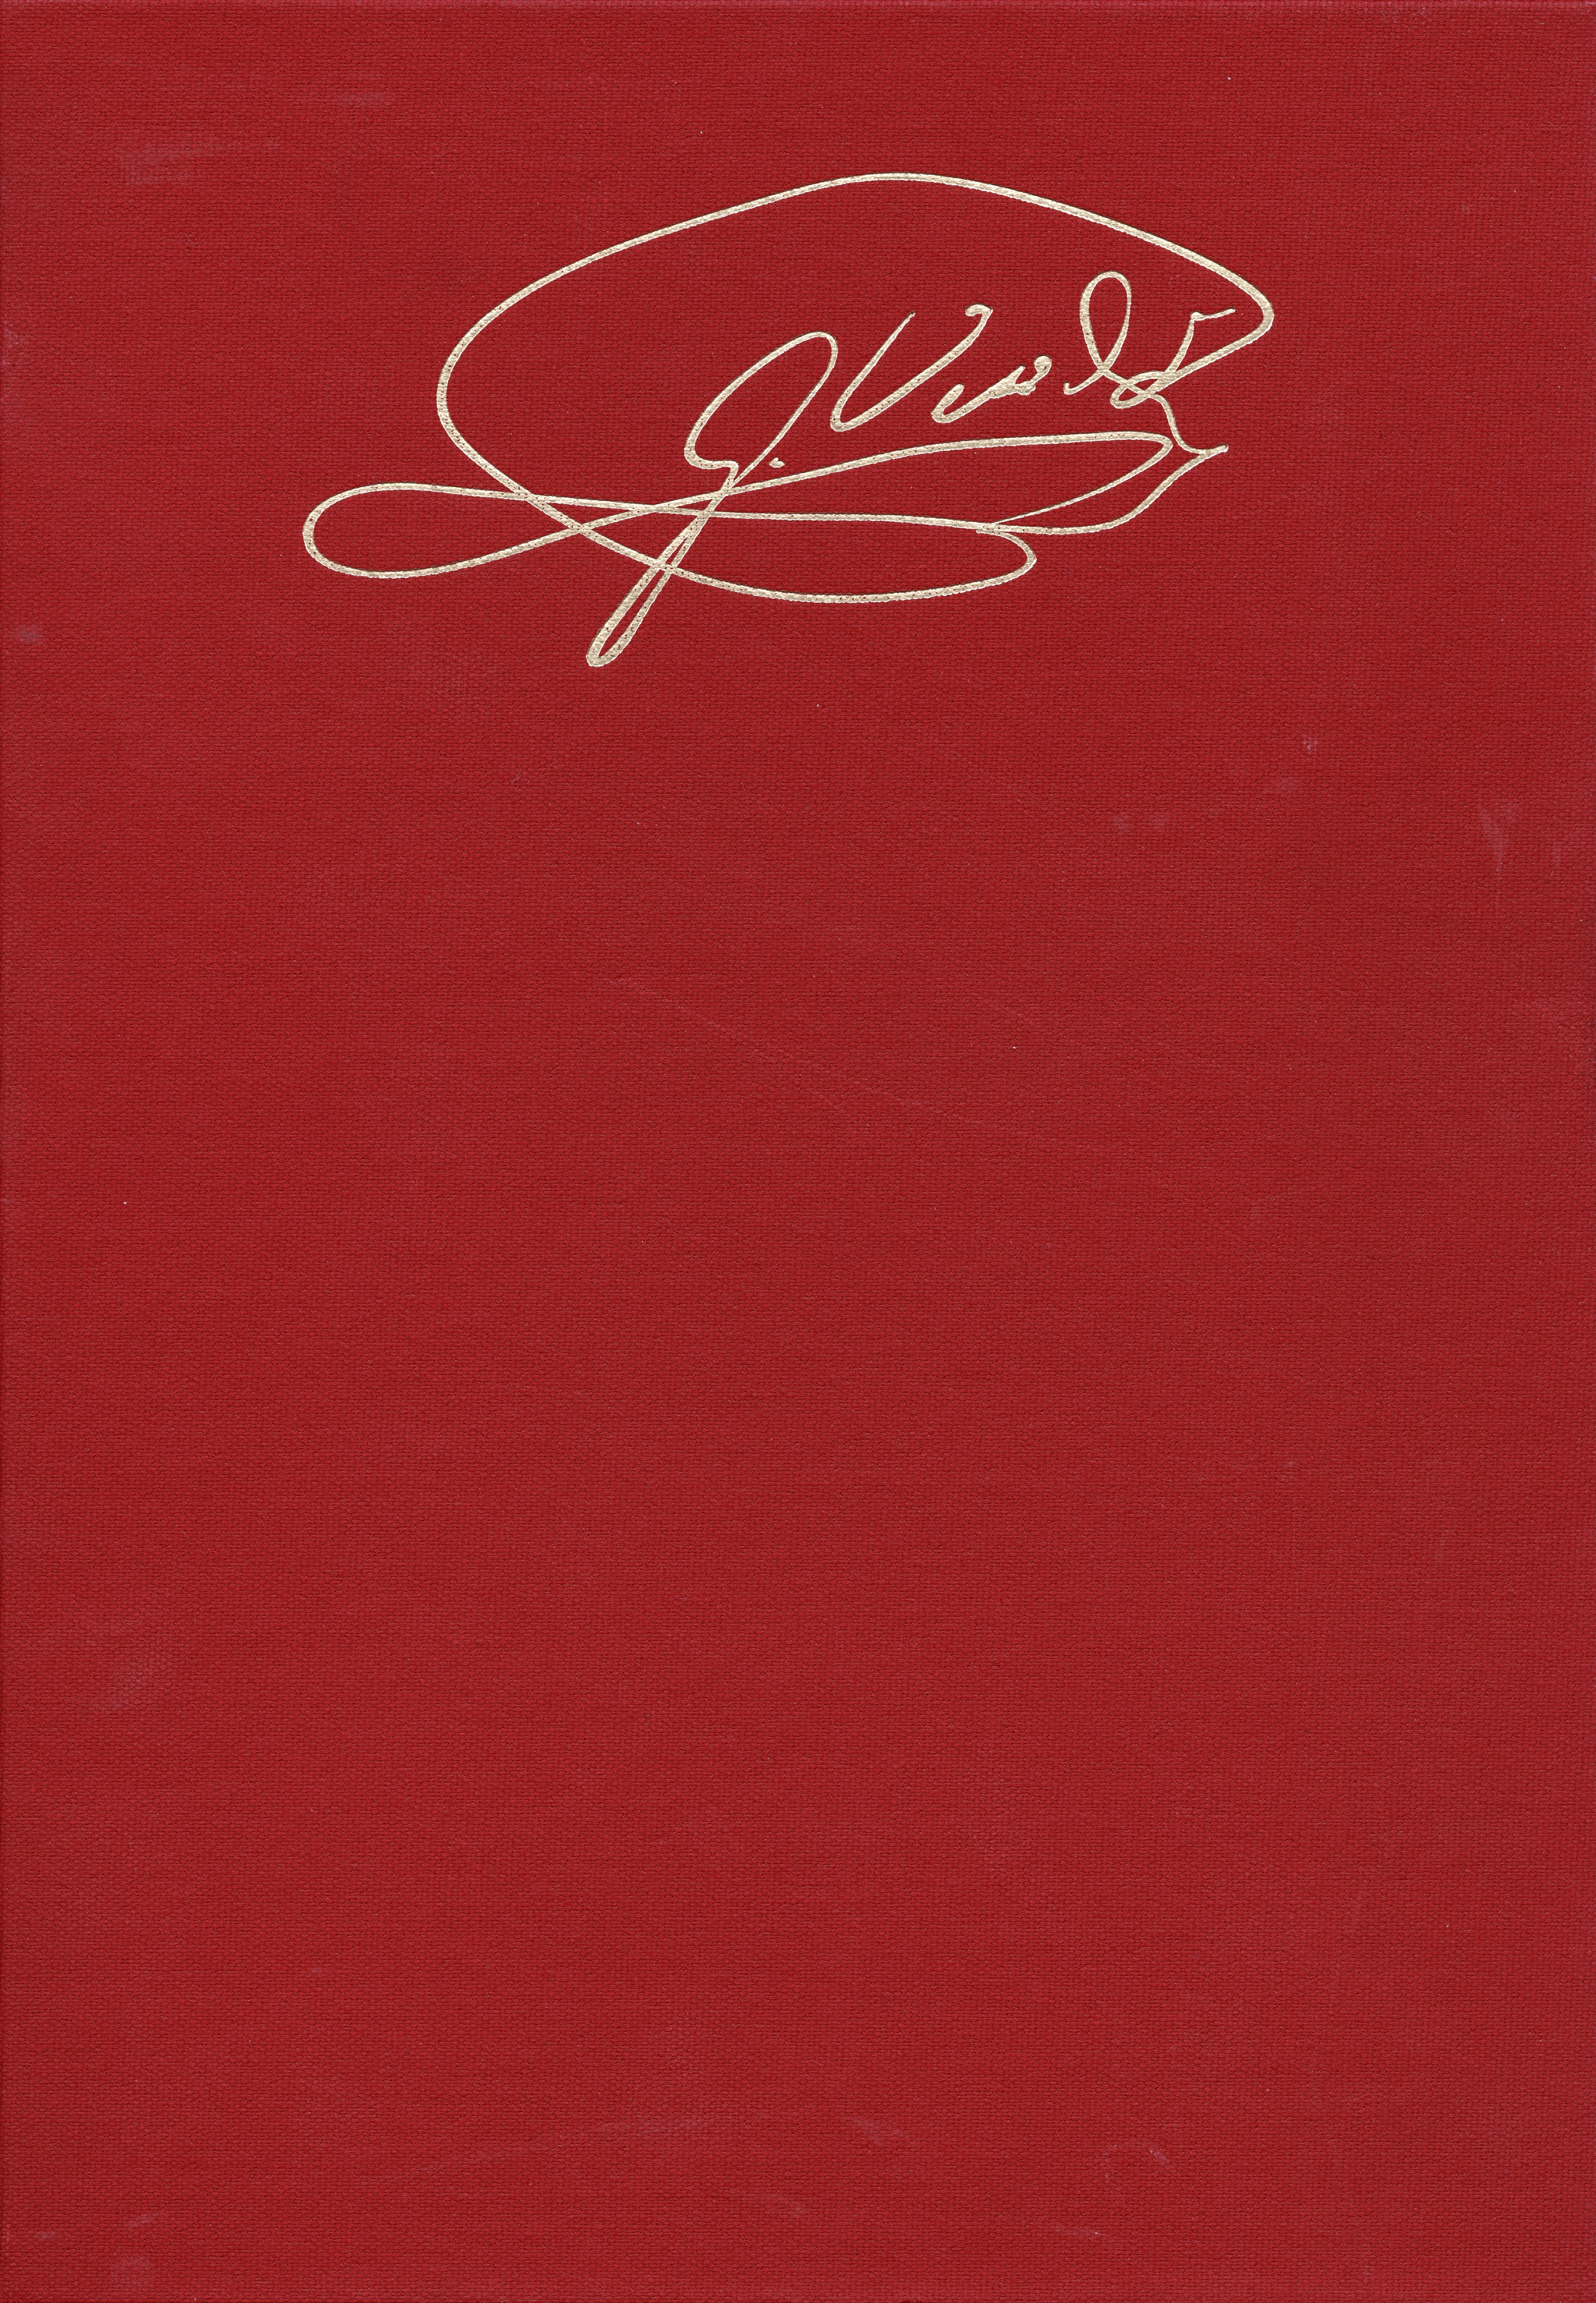 giuseppe verdi signature